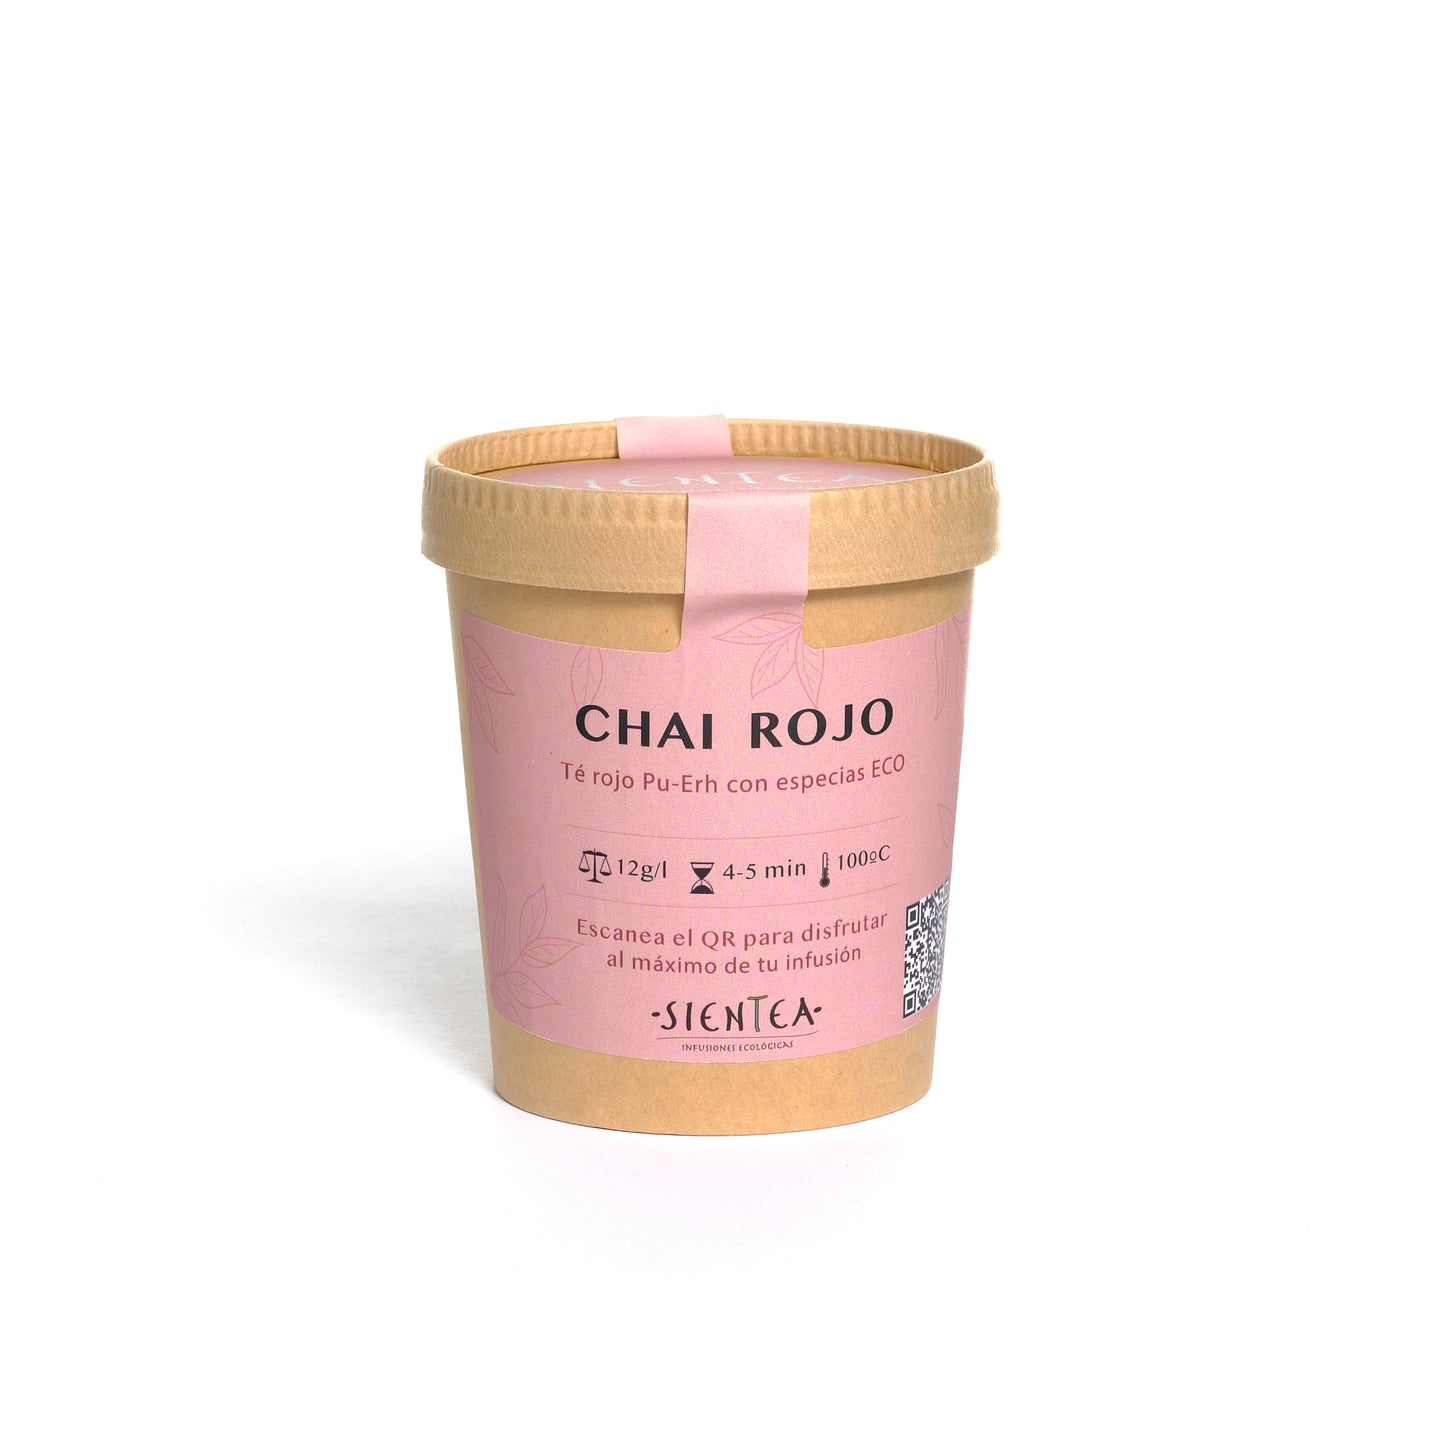 CHAI ROJO - Té Rojo con especias ECO - 100g